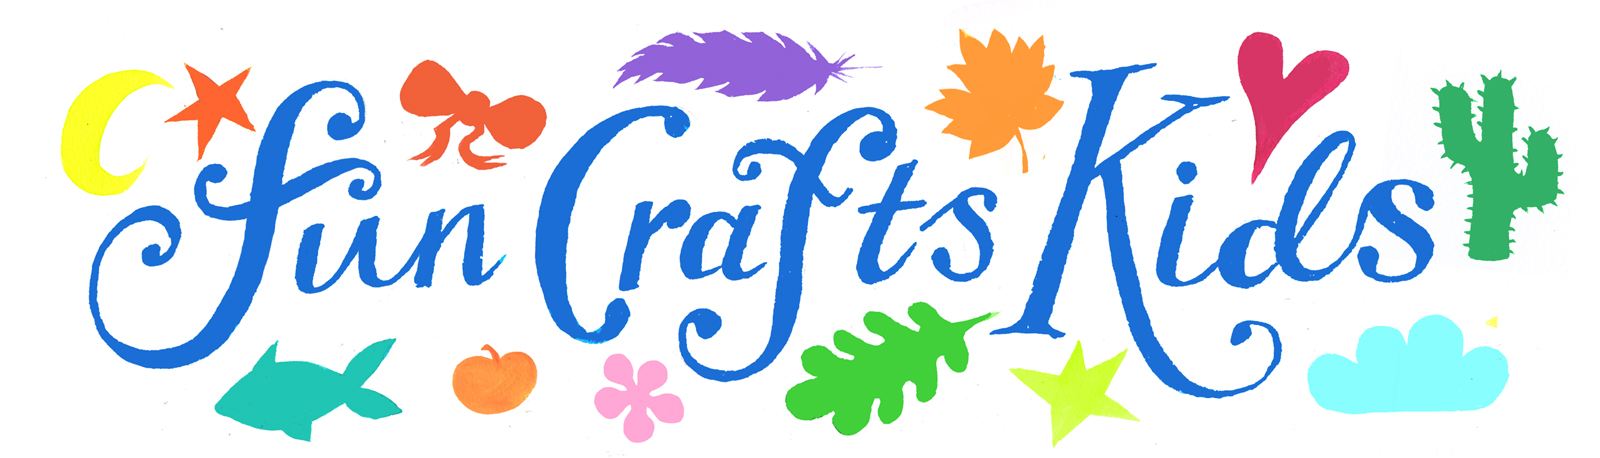 crafts clipart kid craft